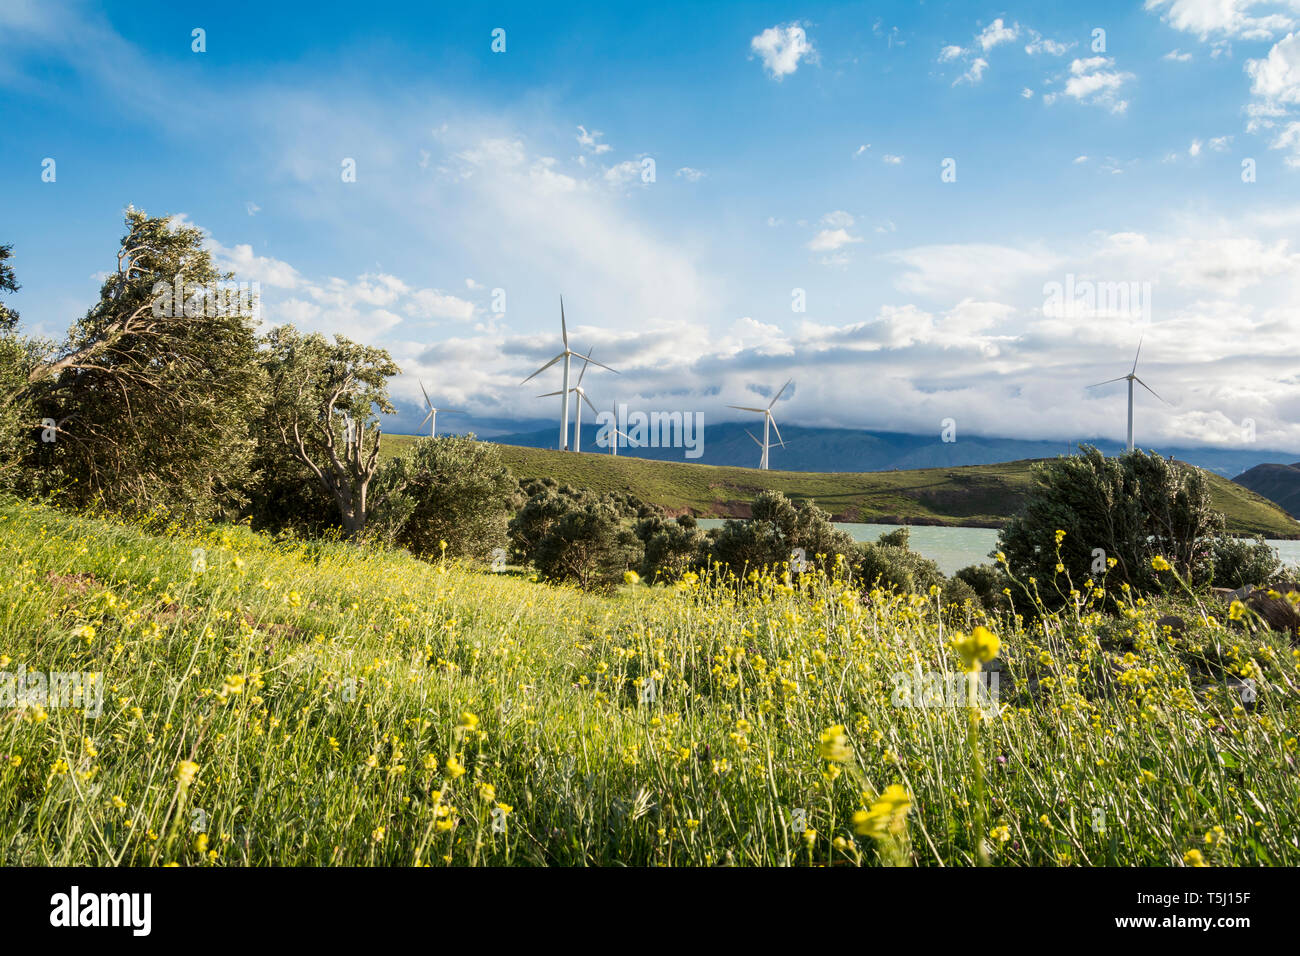 Les moulins à vent ferme au printemps, la technologie de production d'énergie moderne, respectueuse de l'environnement la production d'électricité Banque D'Images